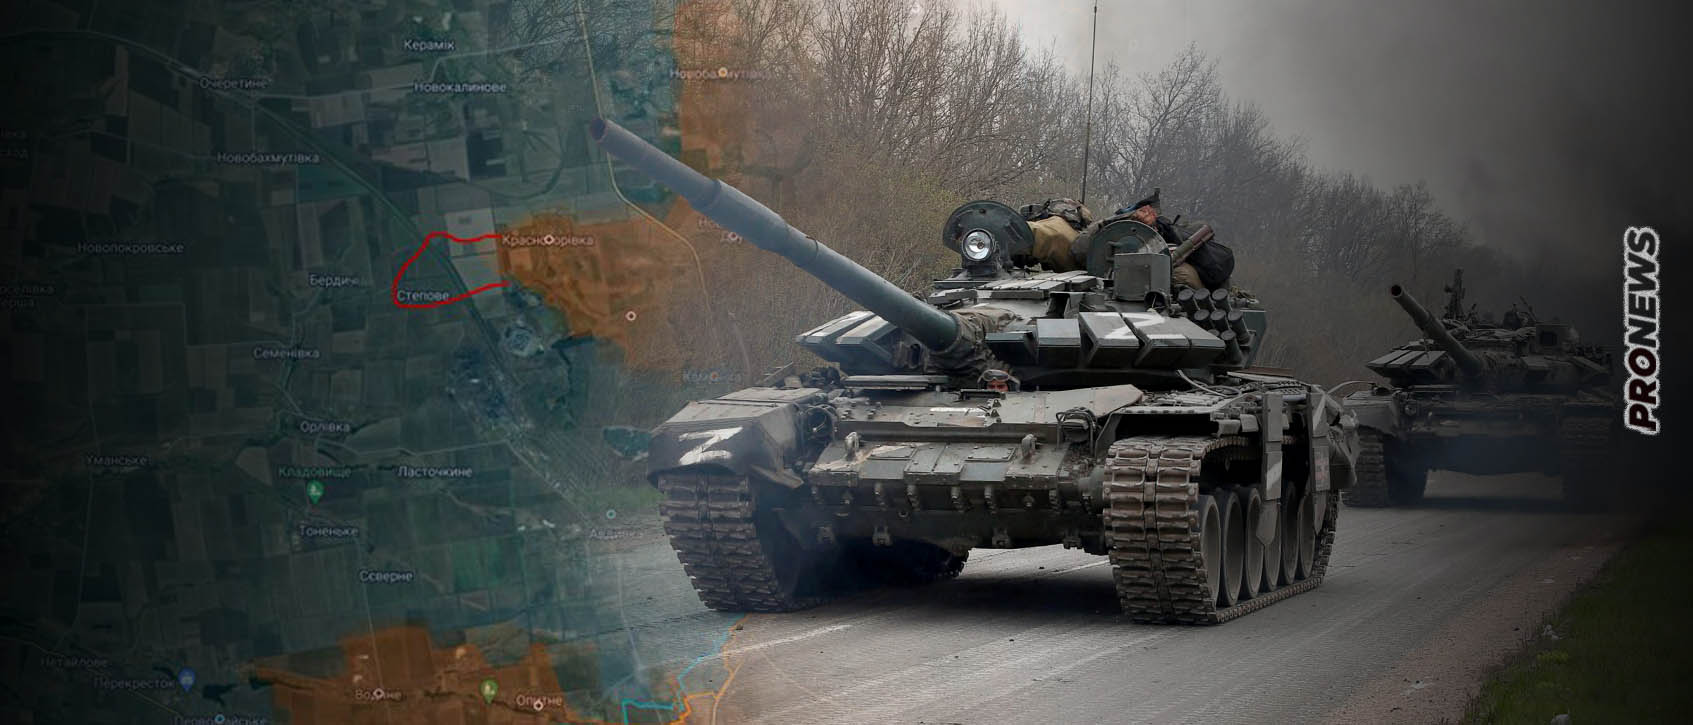 Βίντεο: Το ρωσικό Πυροβολικό «εξαέρωσε» ουκρανική δύναμη που επιχειρούσε να μπει στην Αβντίιβκα